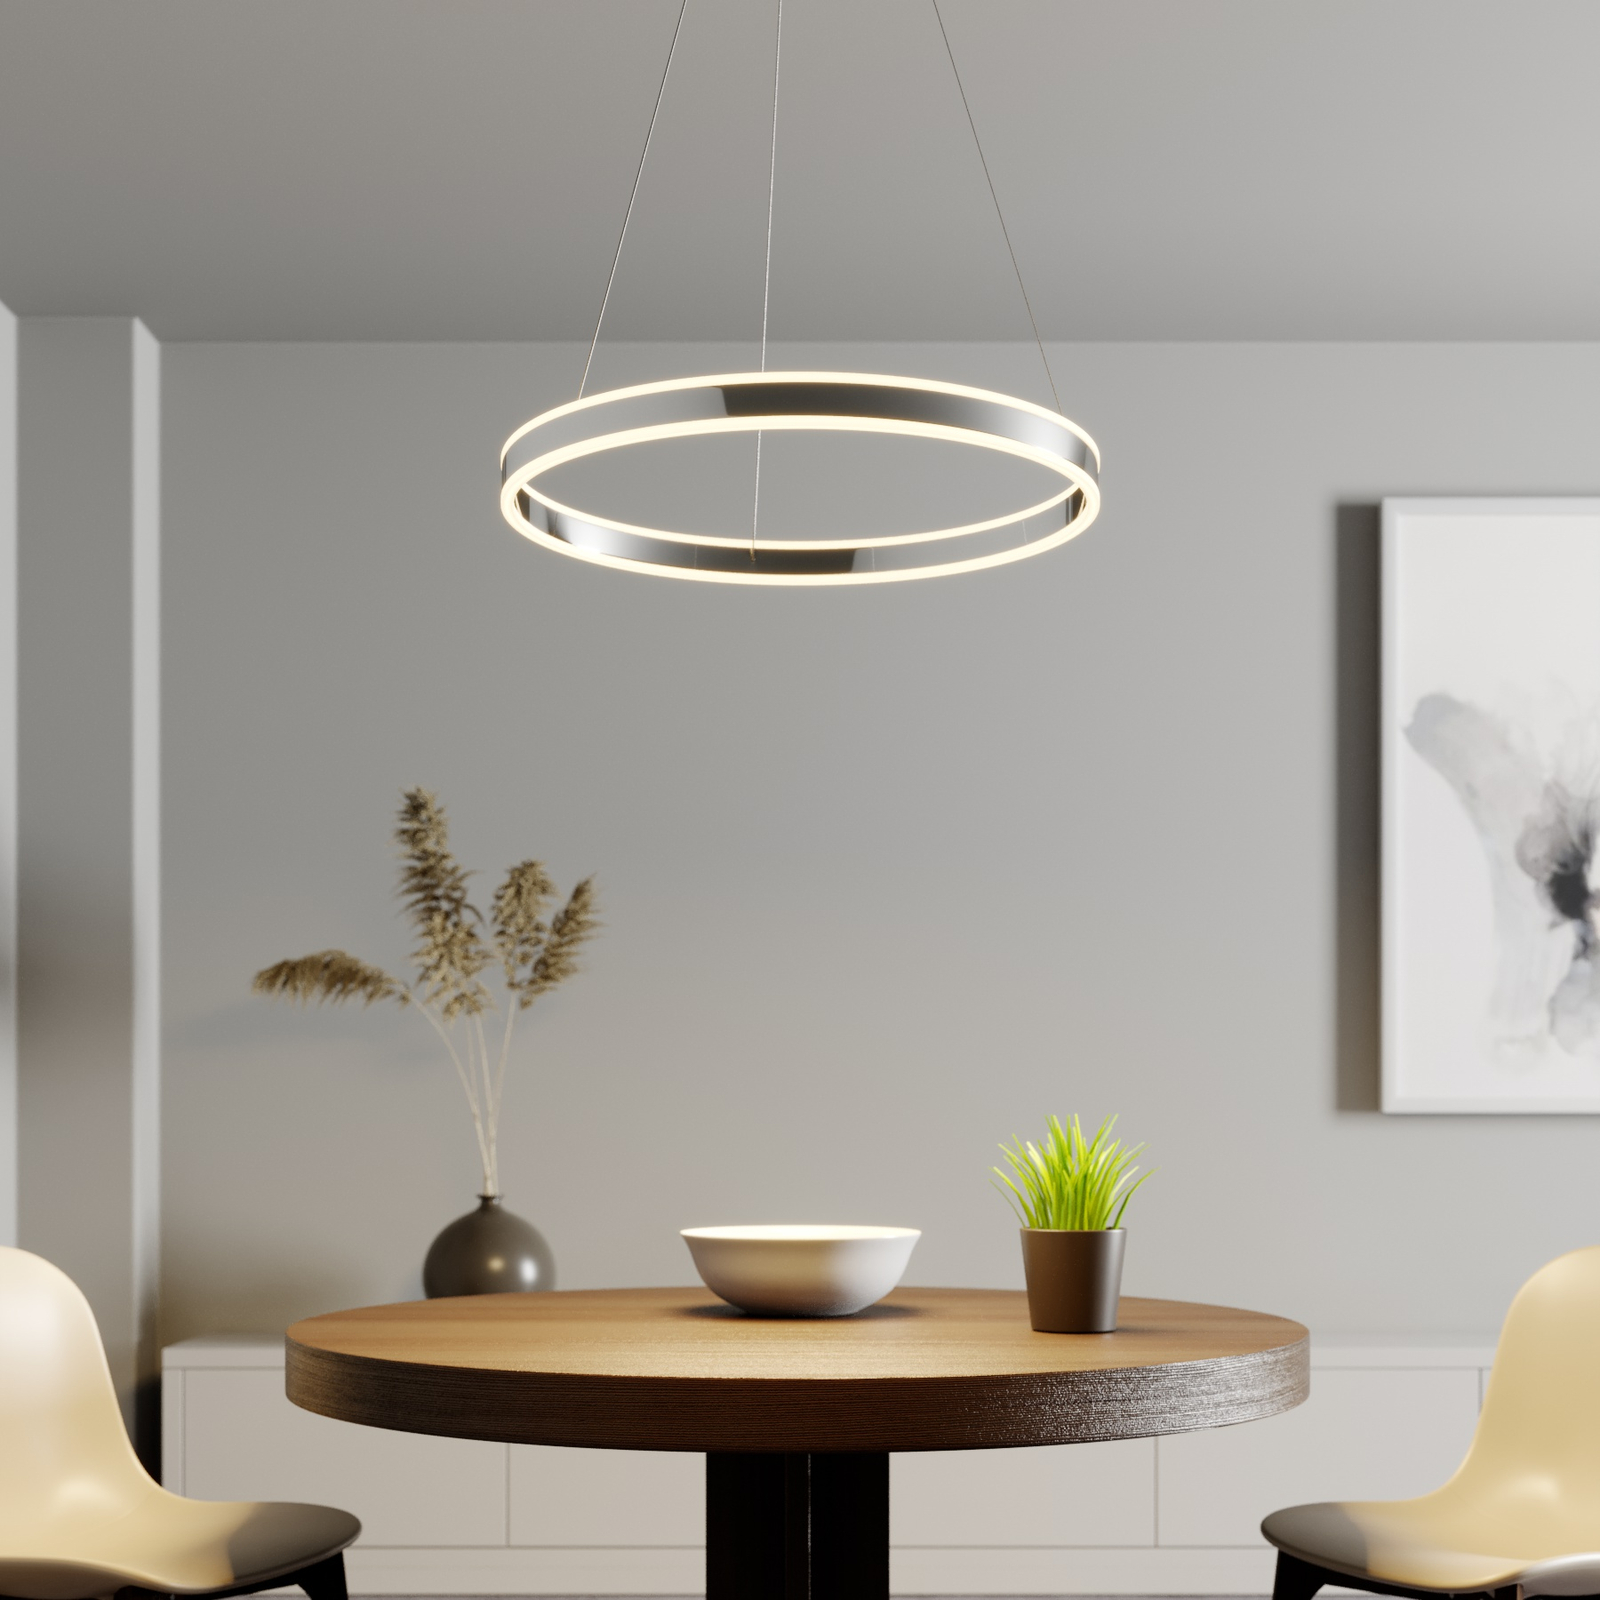 LED hanglamp Lyani in chroom, dimbaar, 60 cm